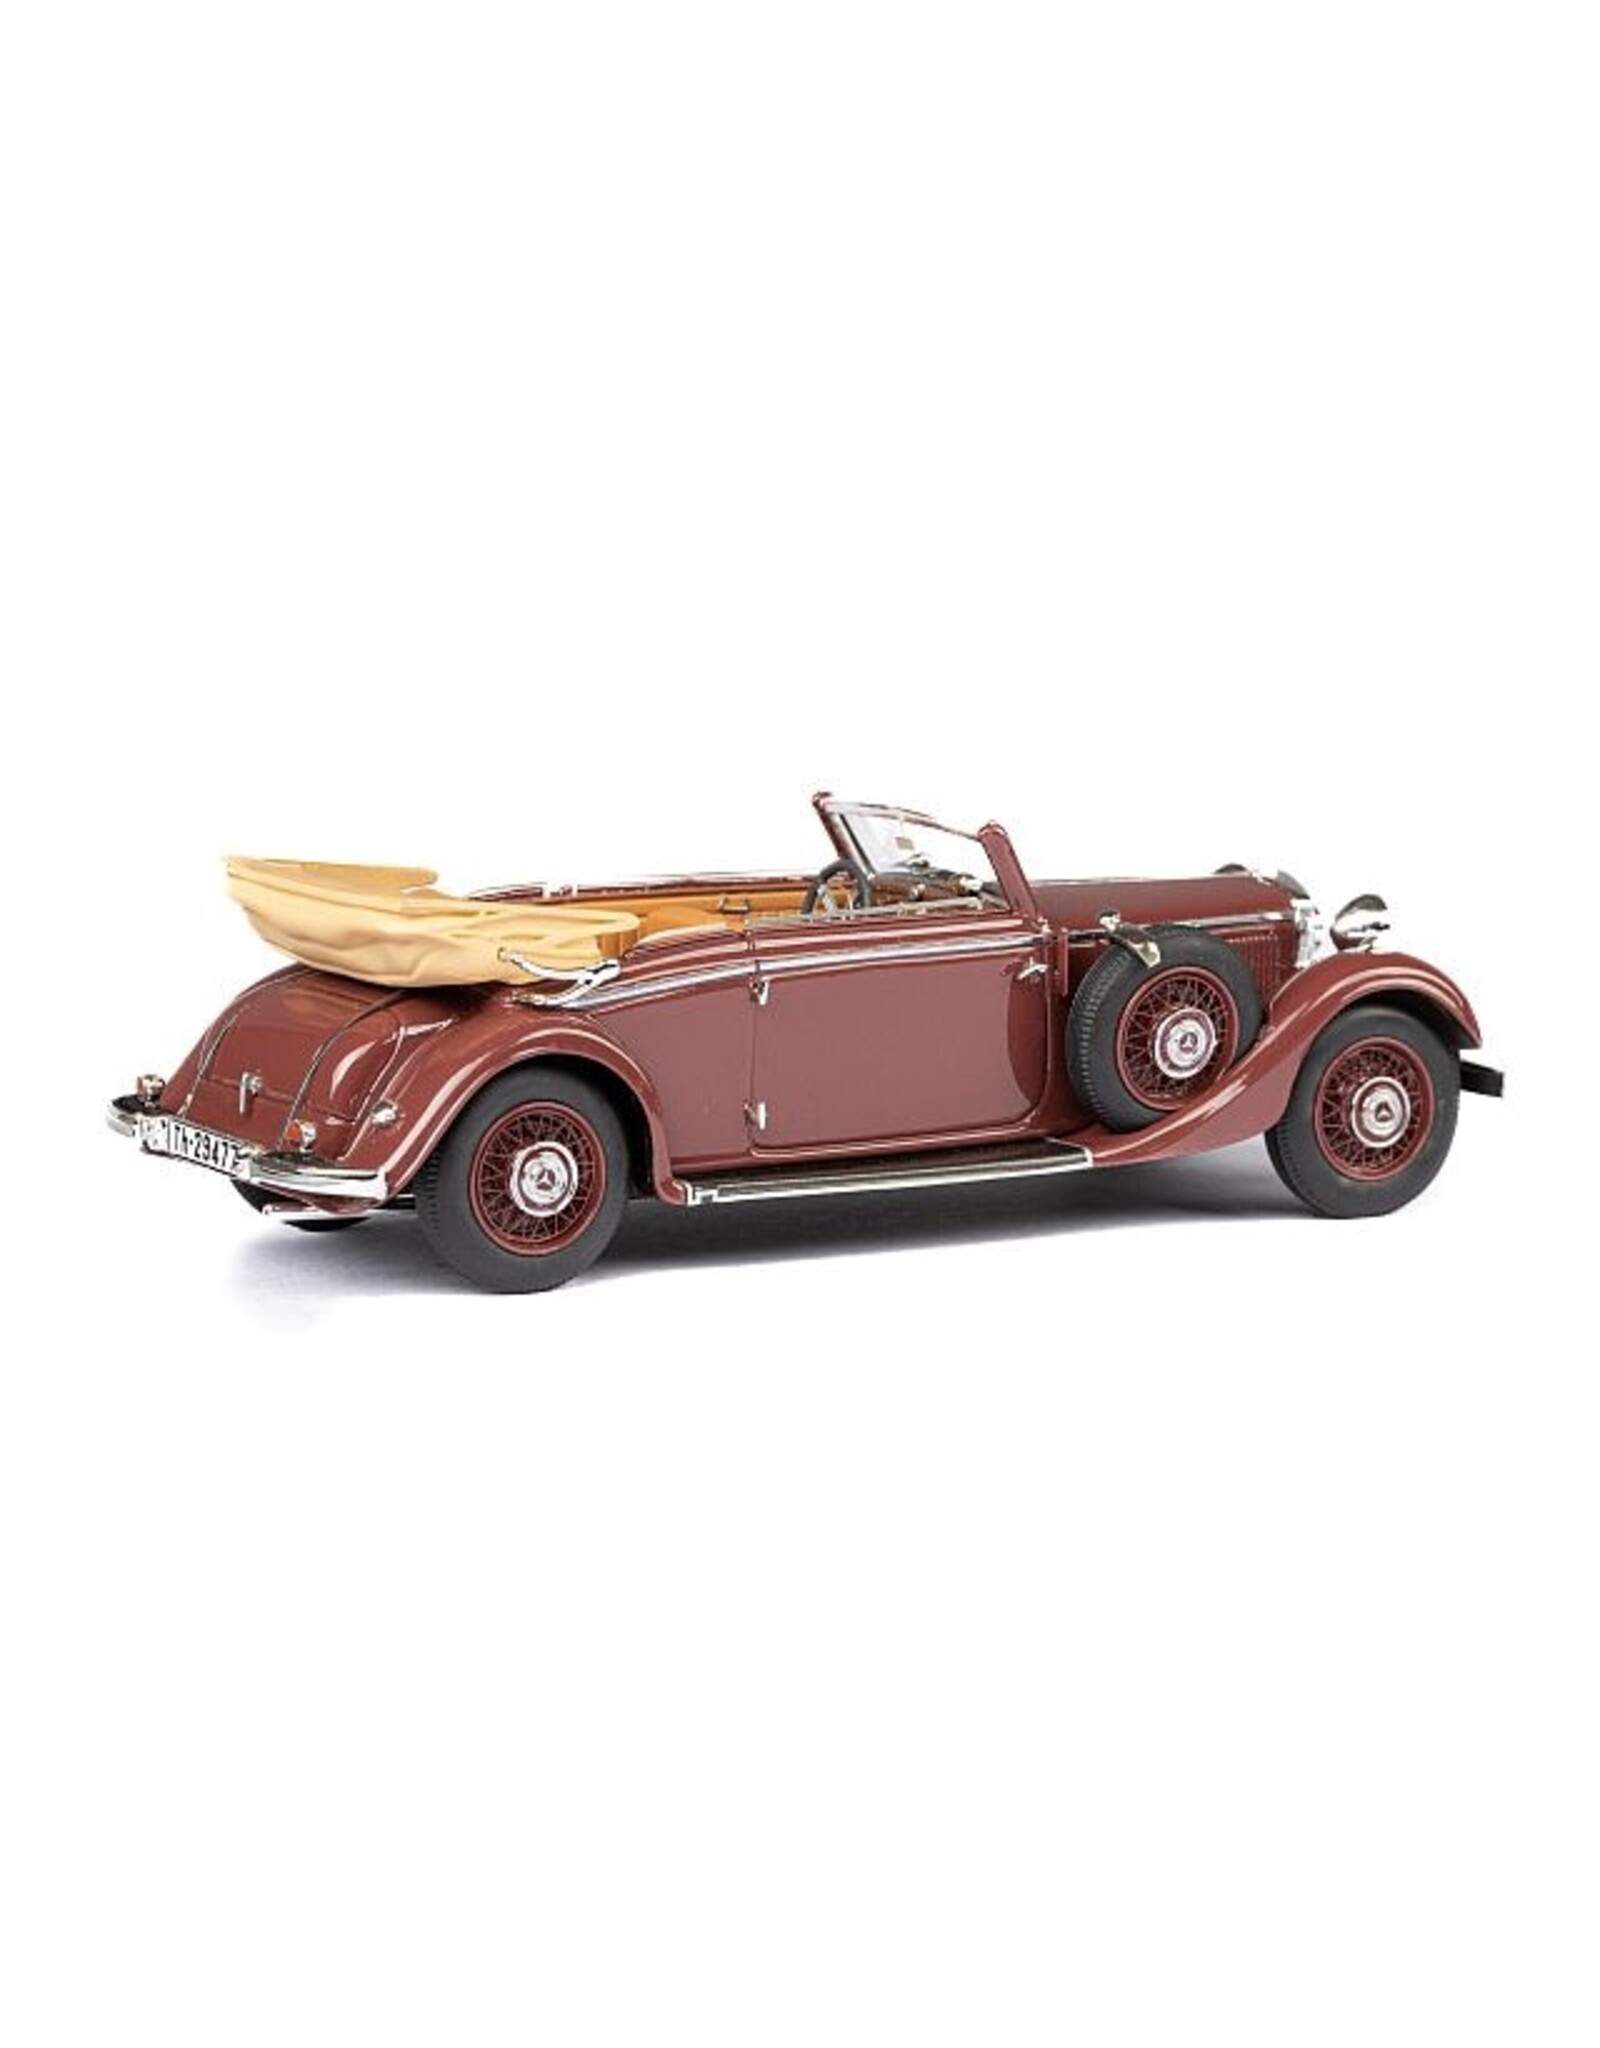 Mercedes-Benz Mercedes-Benz 290(W18)1933-36 cabriolet B-long wheelbase-open roof-chestnut brown